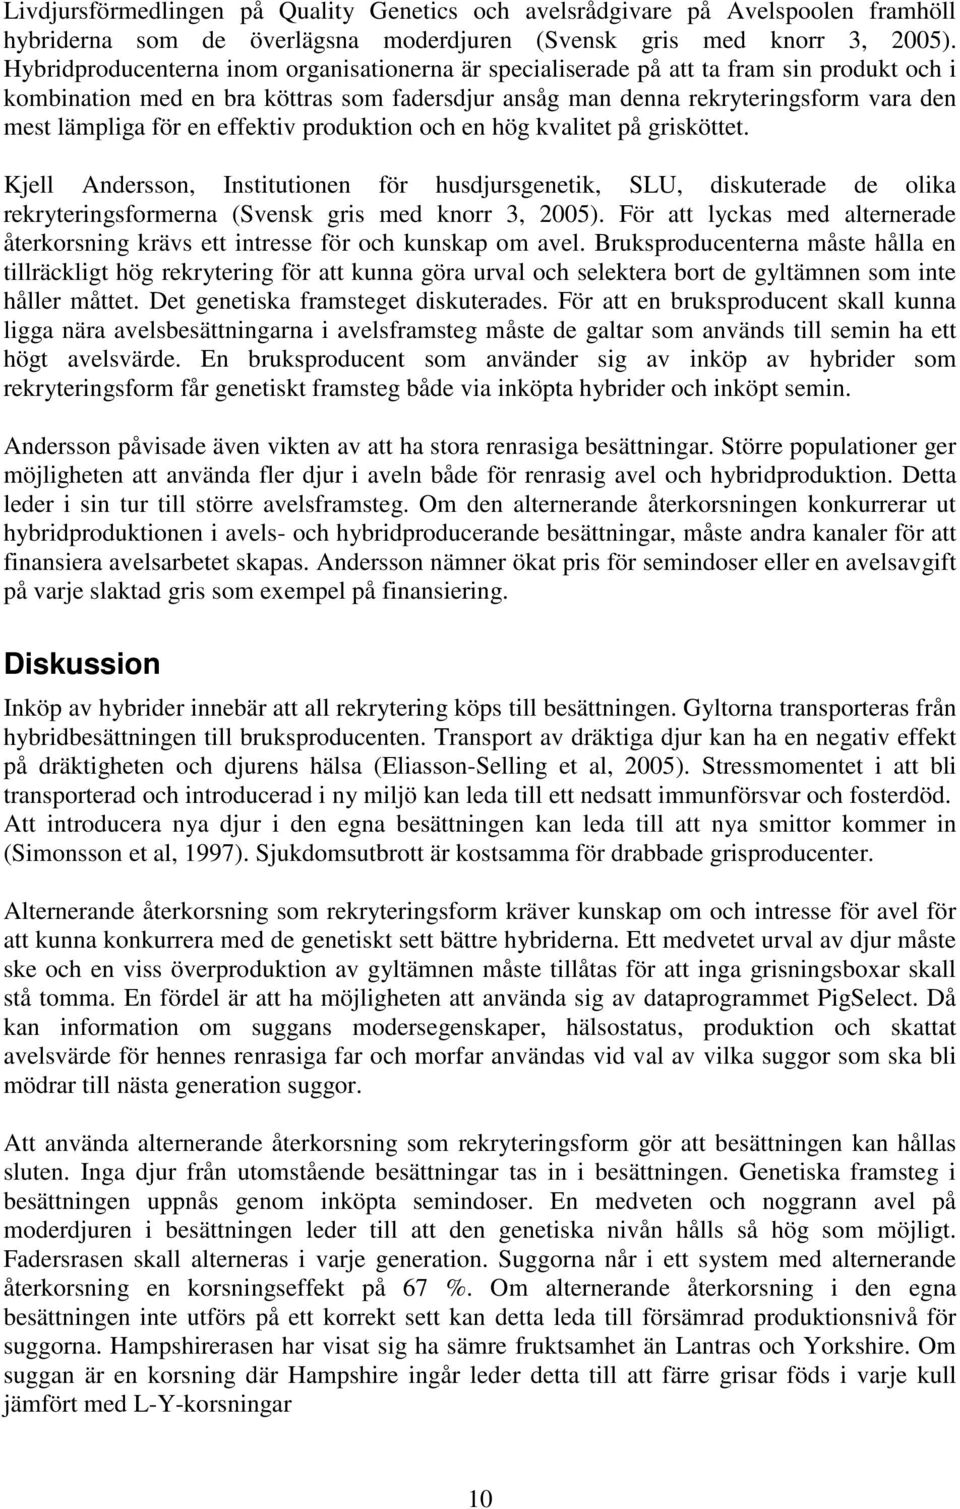 en effektiv produktion och en hög kvalitet på grisköttet. Kjell Andersson, Institutionen för husdjursgenetik, SLU, diskuterade de olika rekryteringsformerna (Svensk gris med knorr 3, 2005).